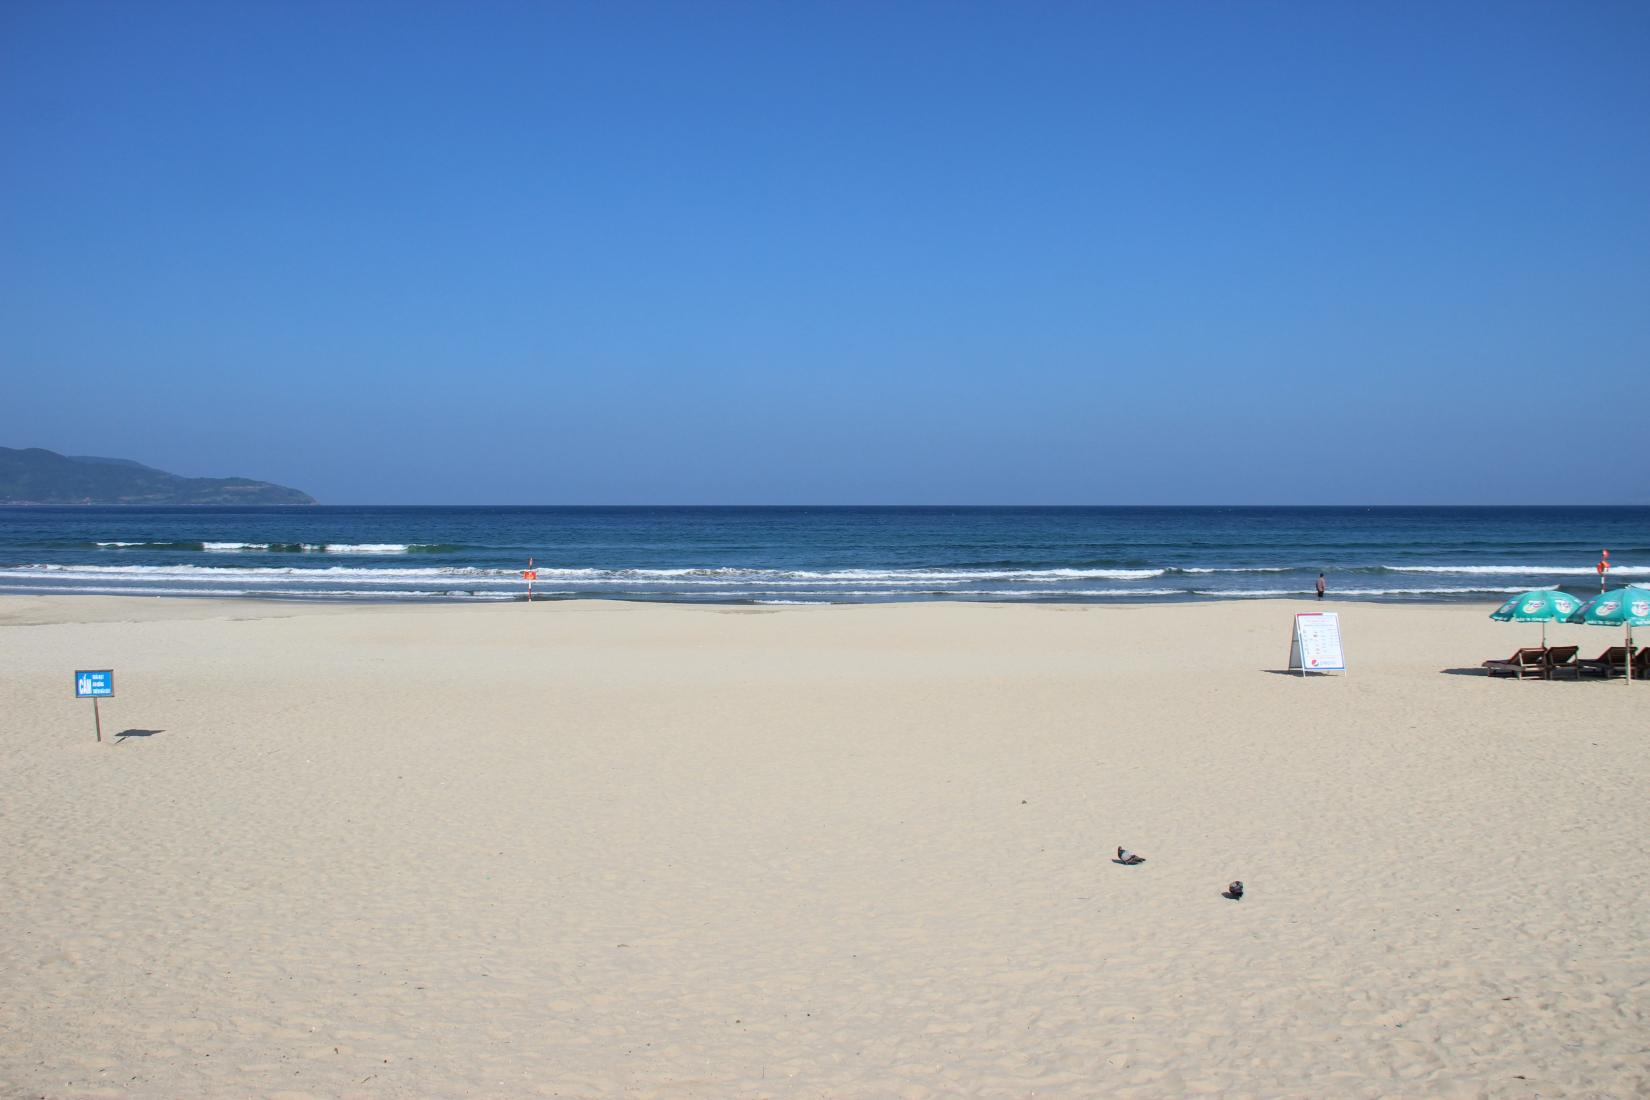 Sandee - My Khe Beach